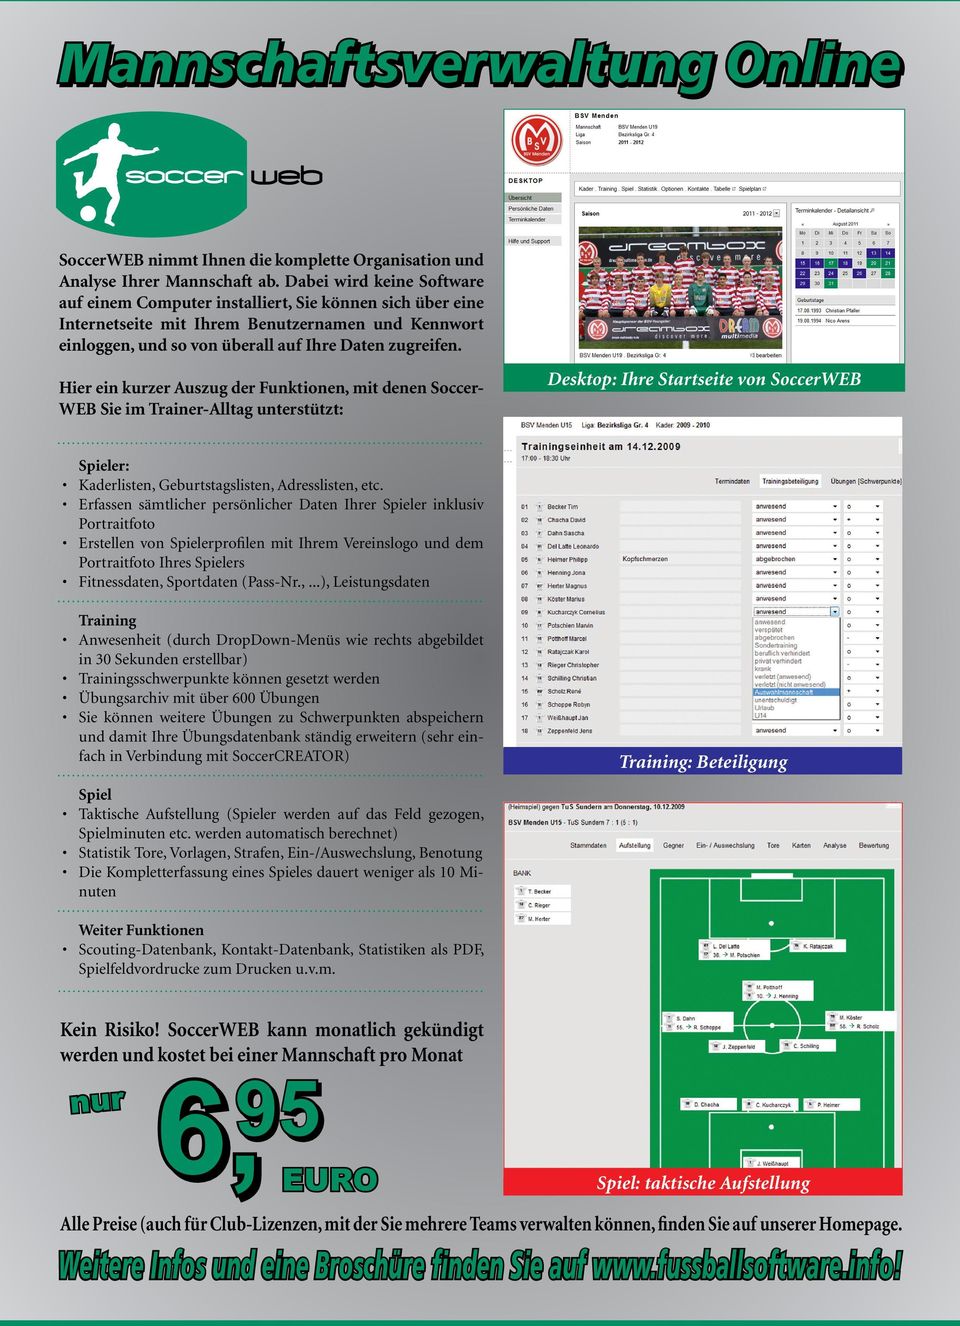 Hier ein kurzer Auszug der Funktionen, mit denen Soccer- WEB Sie im Trainer-Alltag unterstützt: Desktop: Ihre Startseite von SoccerWEB Spieler: Kaderlisten, Geburtstagslisten, Adresslisten, etc.